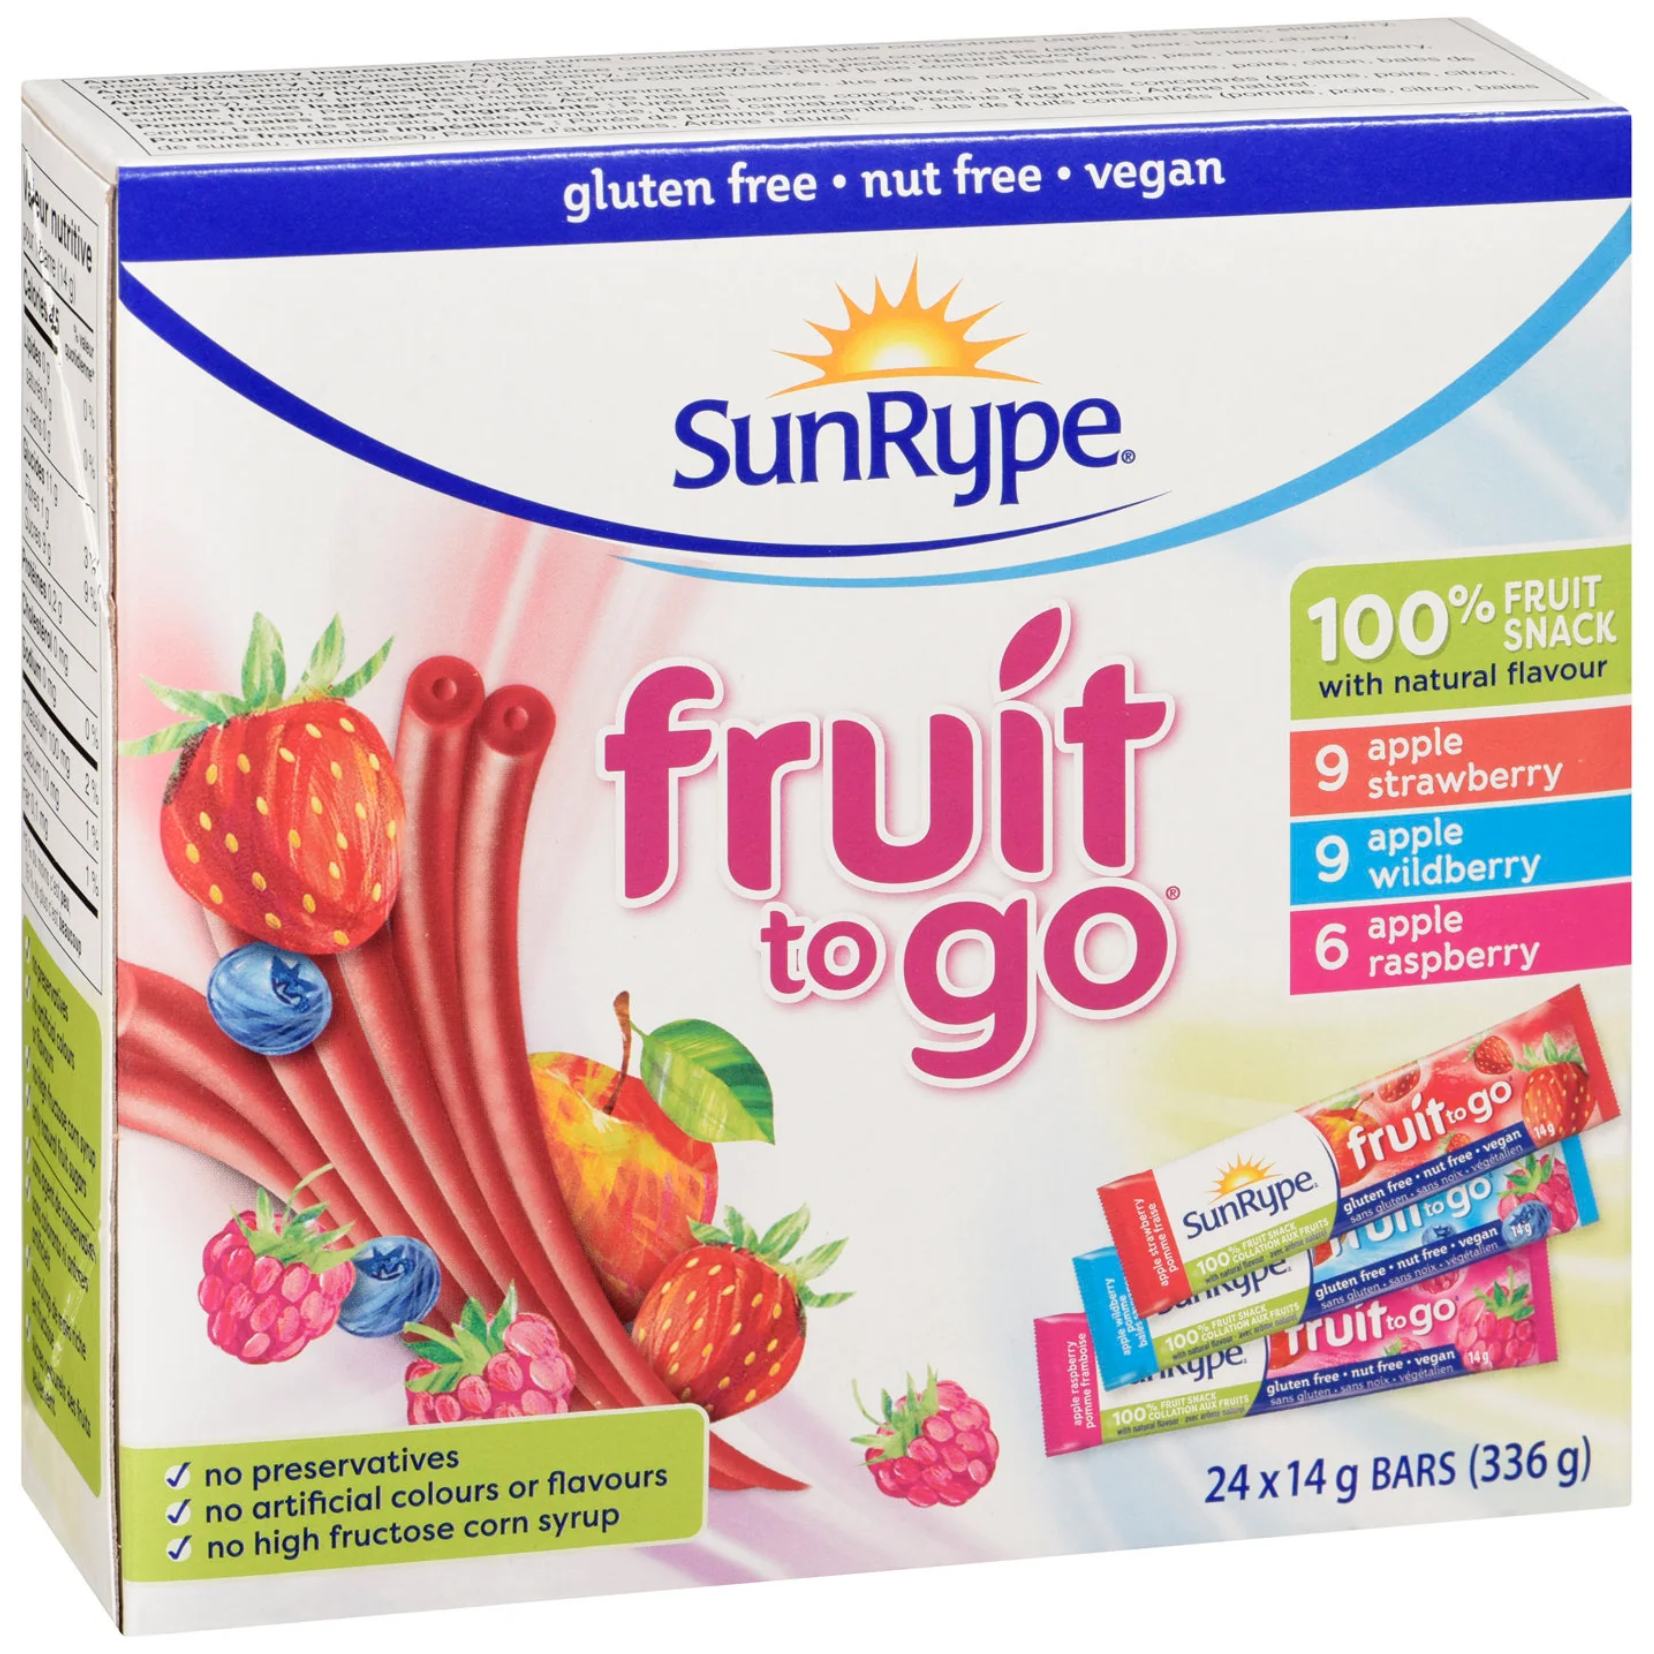 SunRype Variety Pack Fruit to Go Fruit Bars 14g x 24